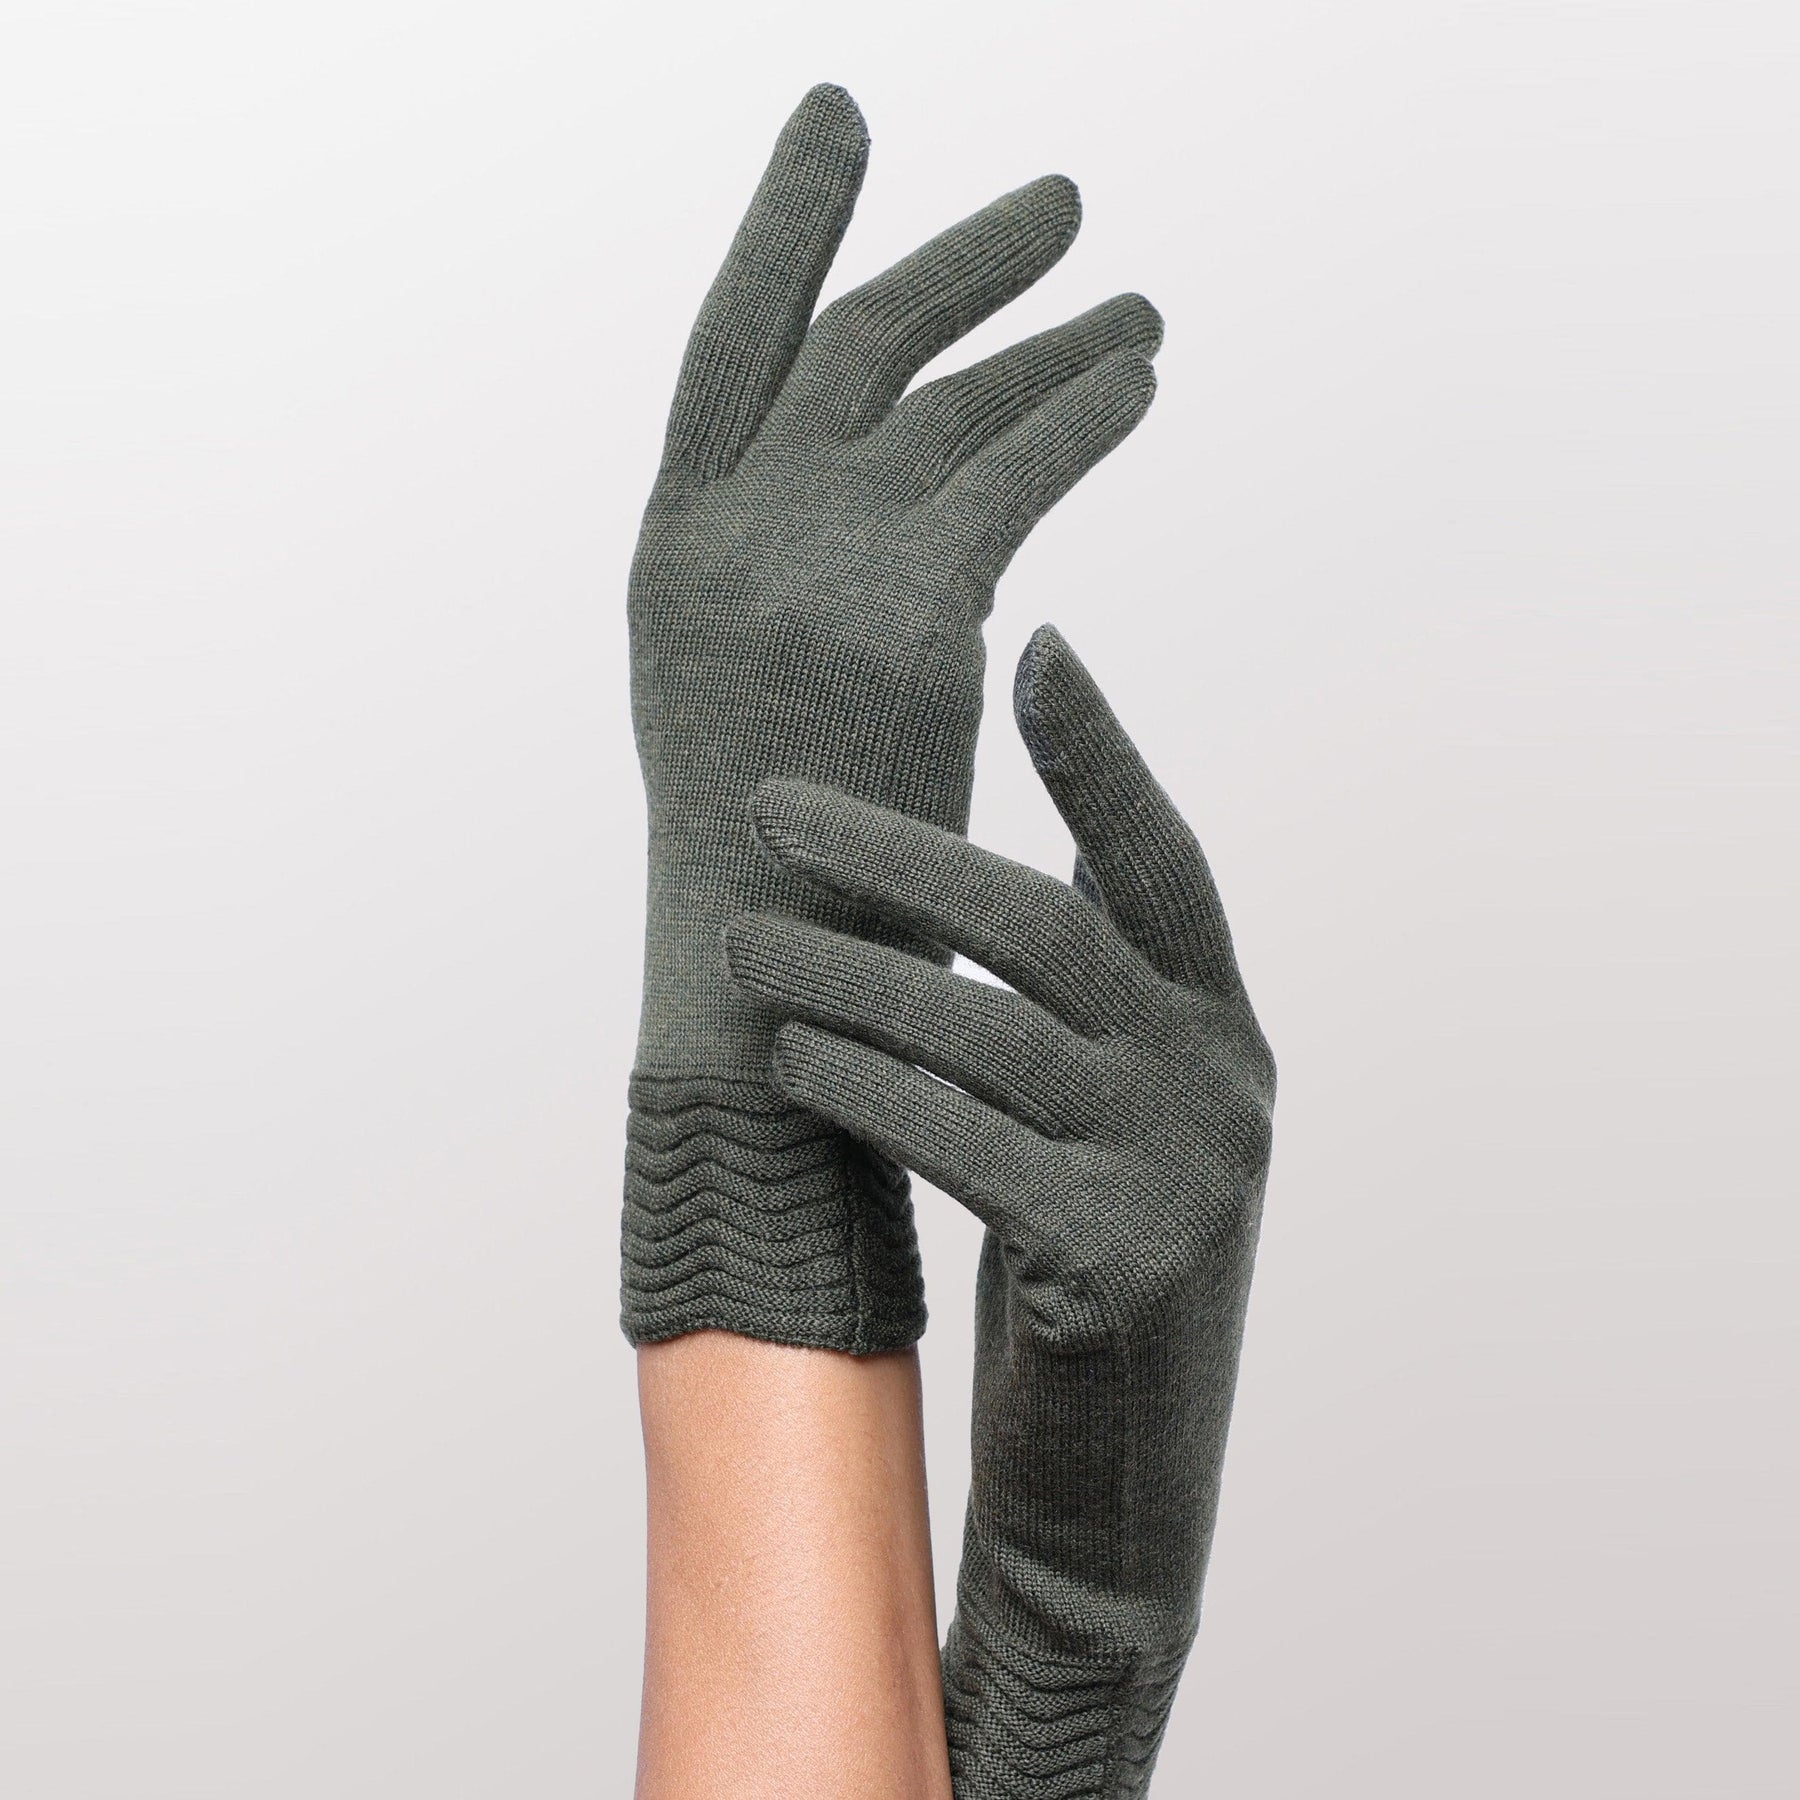 Green wool tech gallery gloves by Seymoure Gloves.